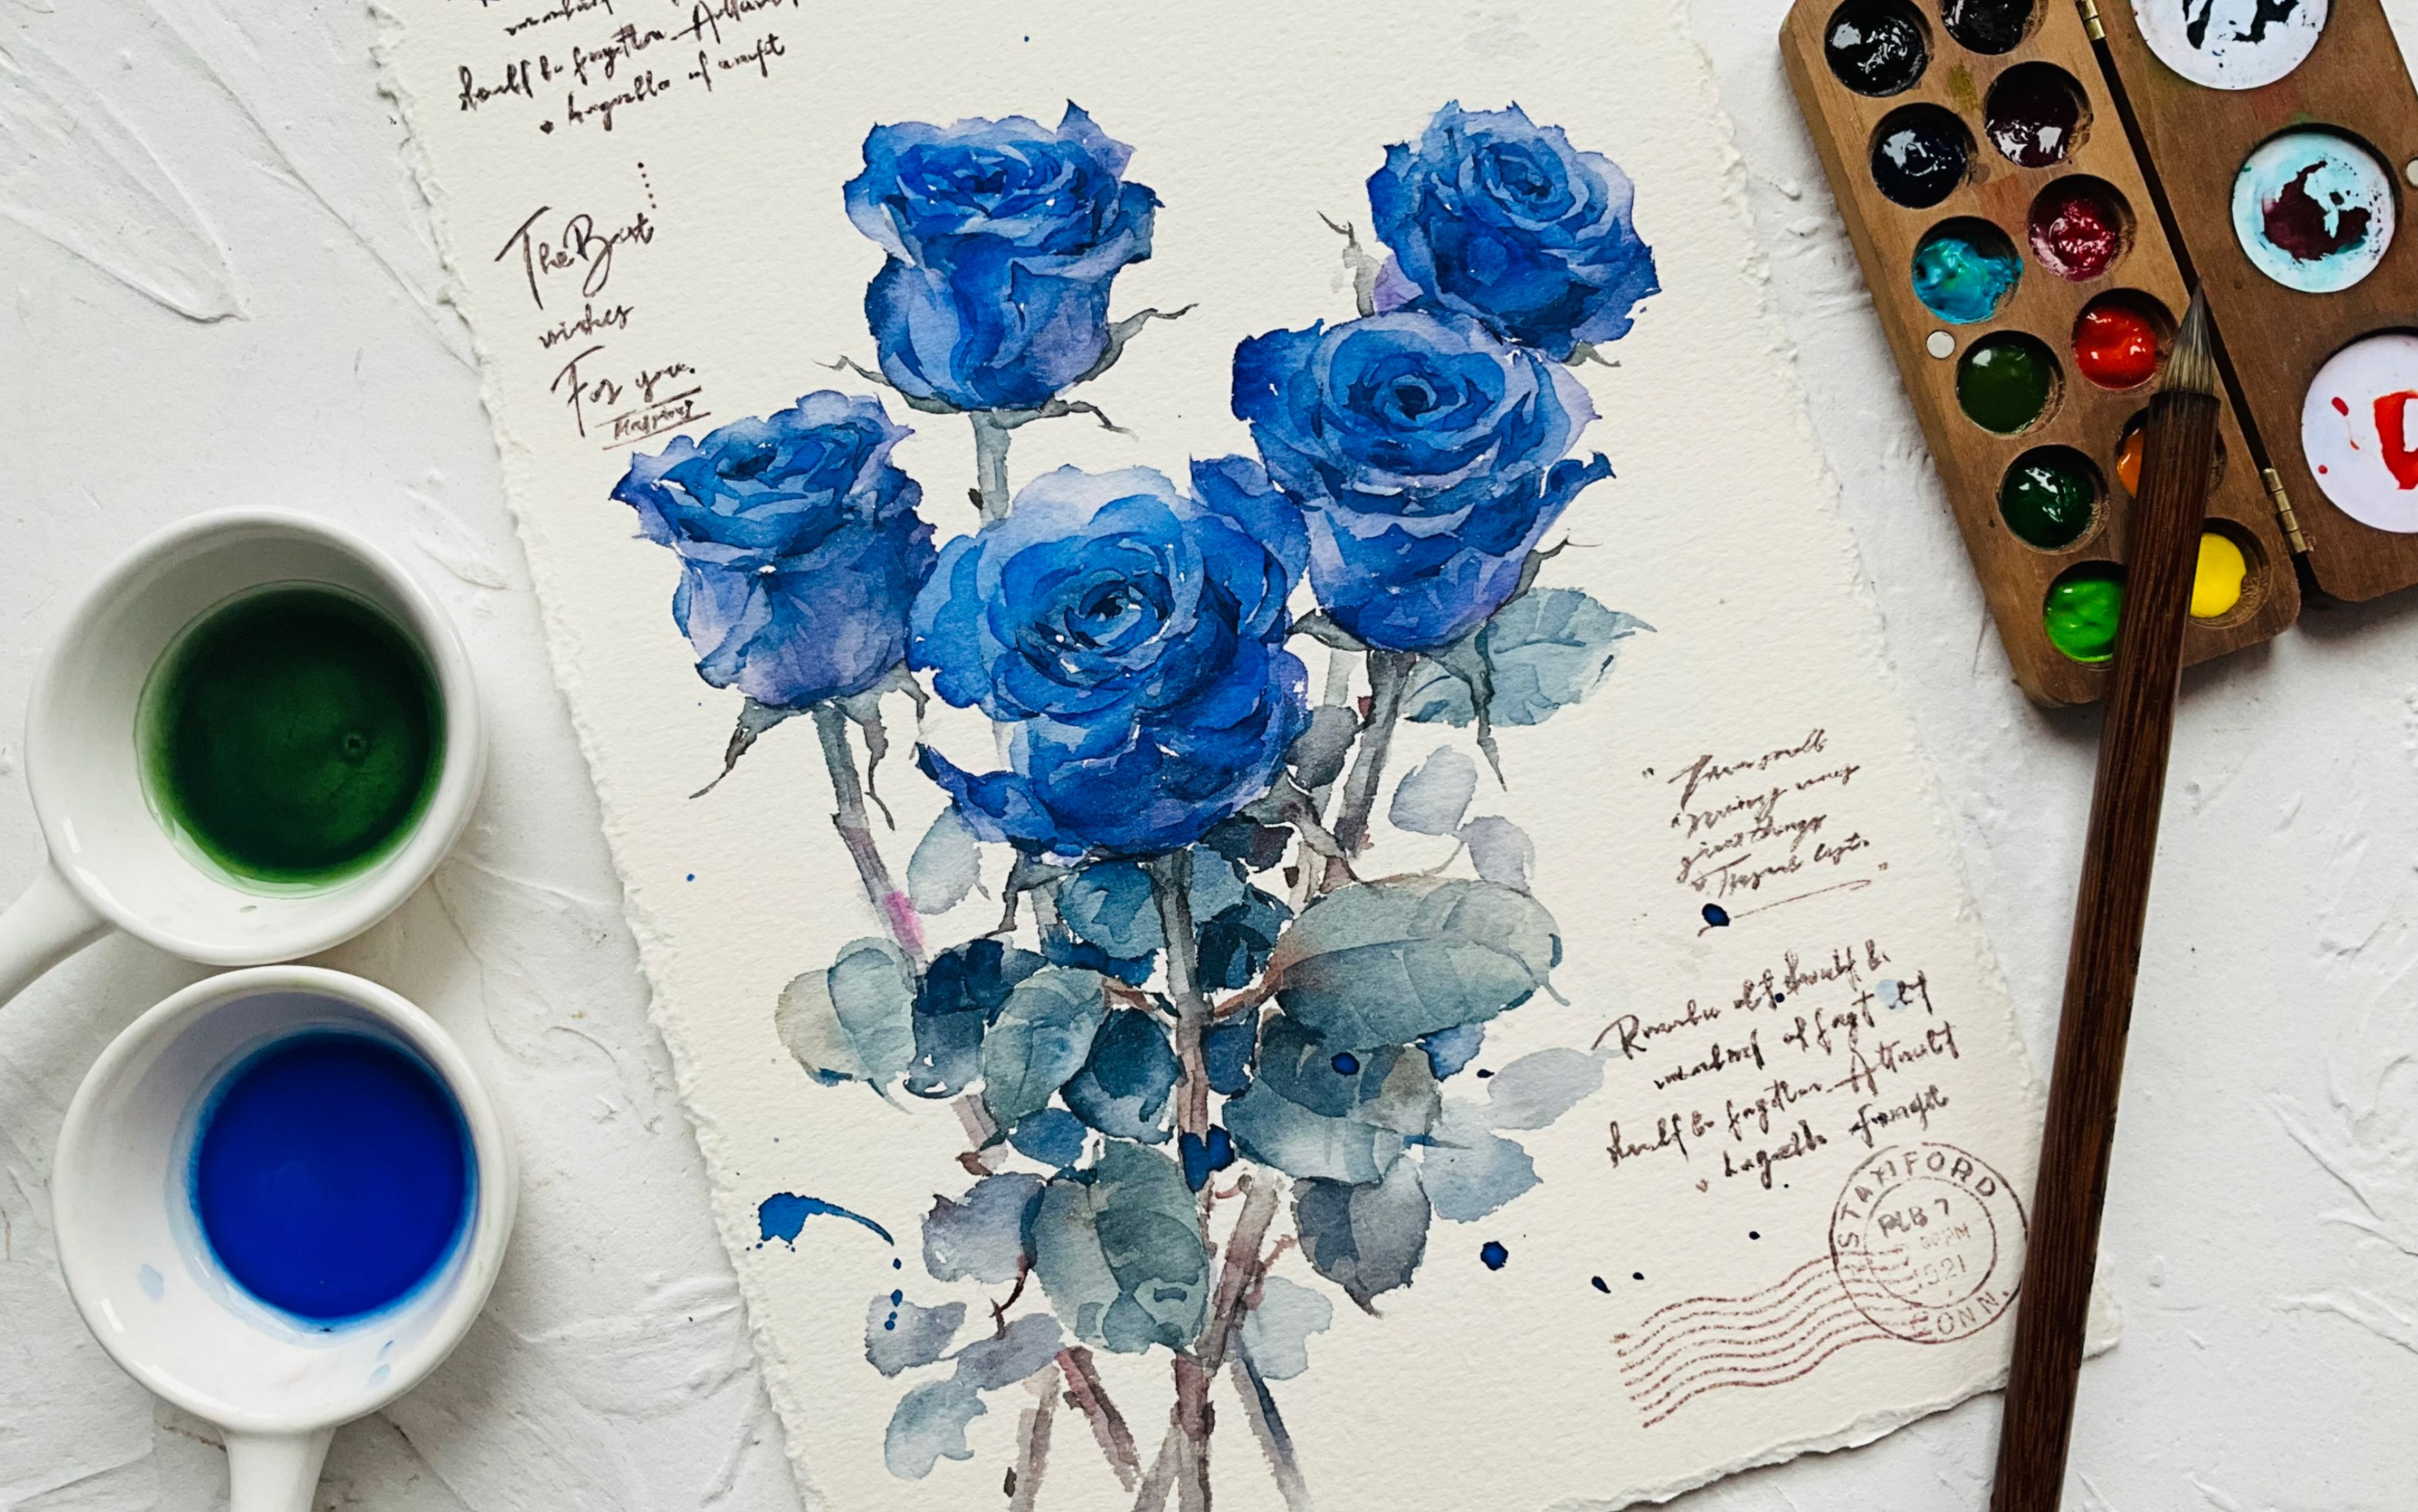 【克菜因蓝玫瑰】沉浸式绘画过程玫瑰与克莱因蓝,未曾谋面也终会相遇!